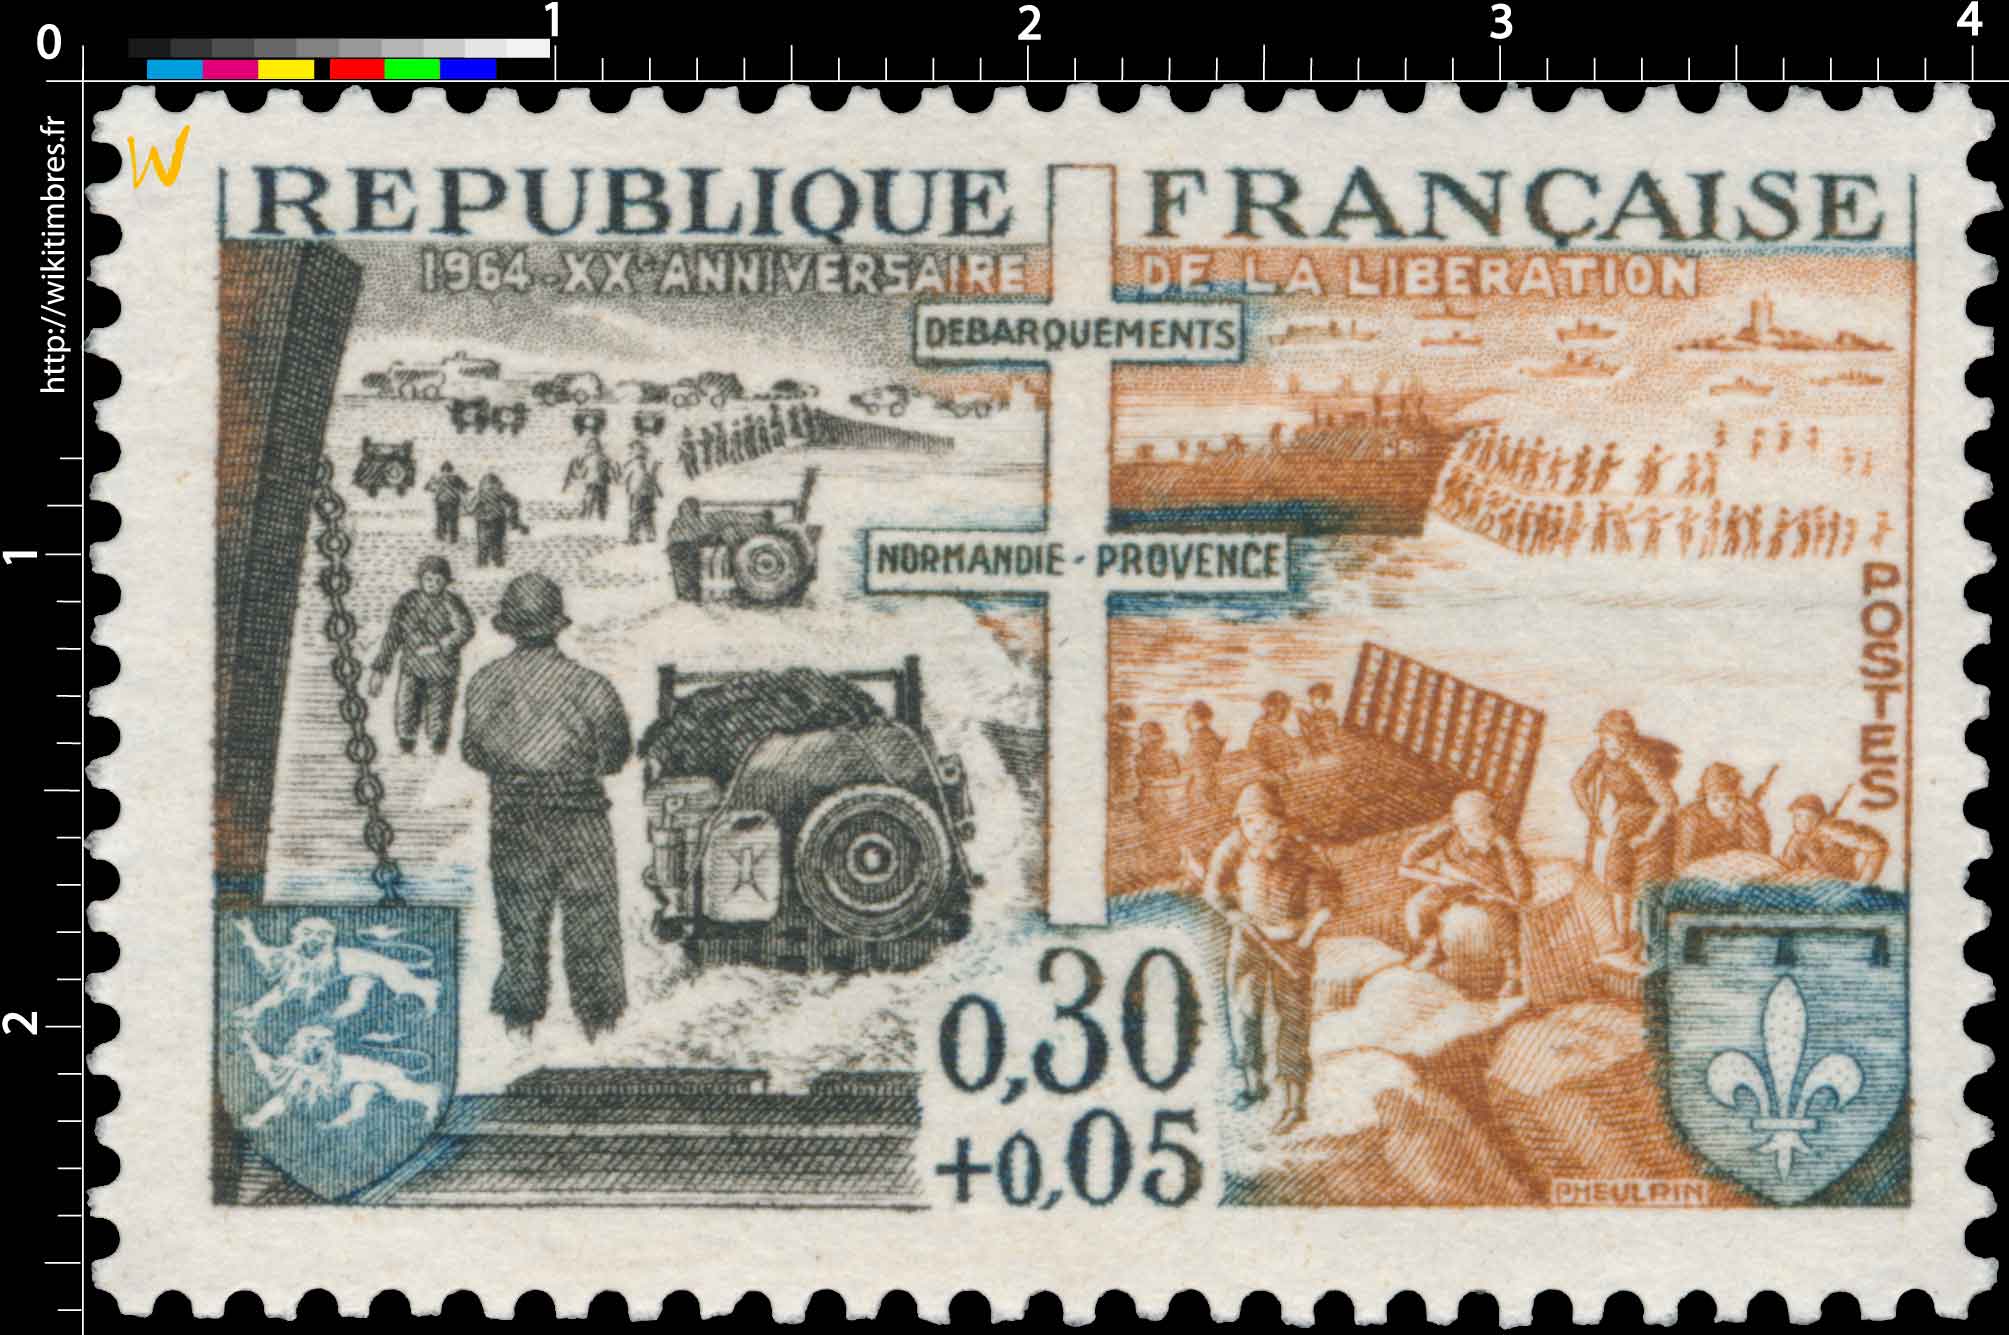 1964- XXe ANNIVERSAIRE DE LA LIBÉRATION DÉBARQUEMENTS NORMANDIE-PROVENCE